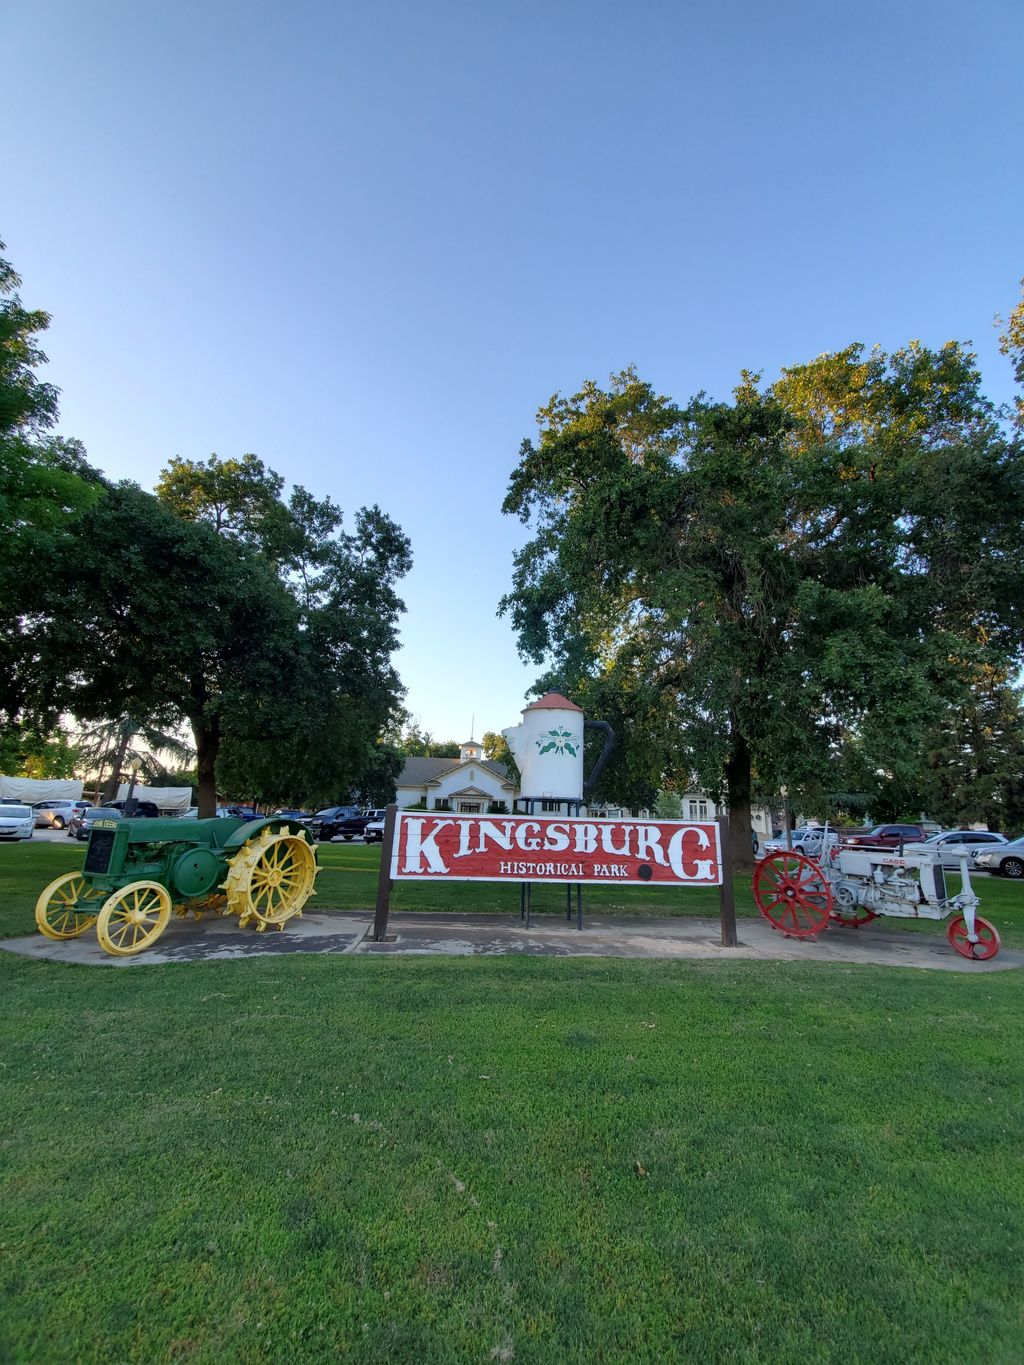 Kingsburg Historical Park